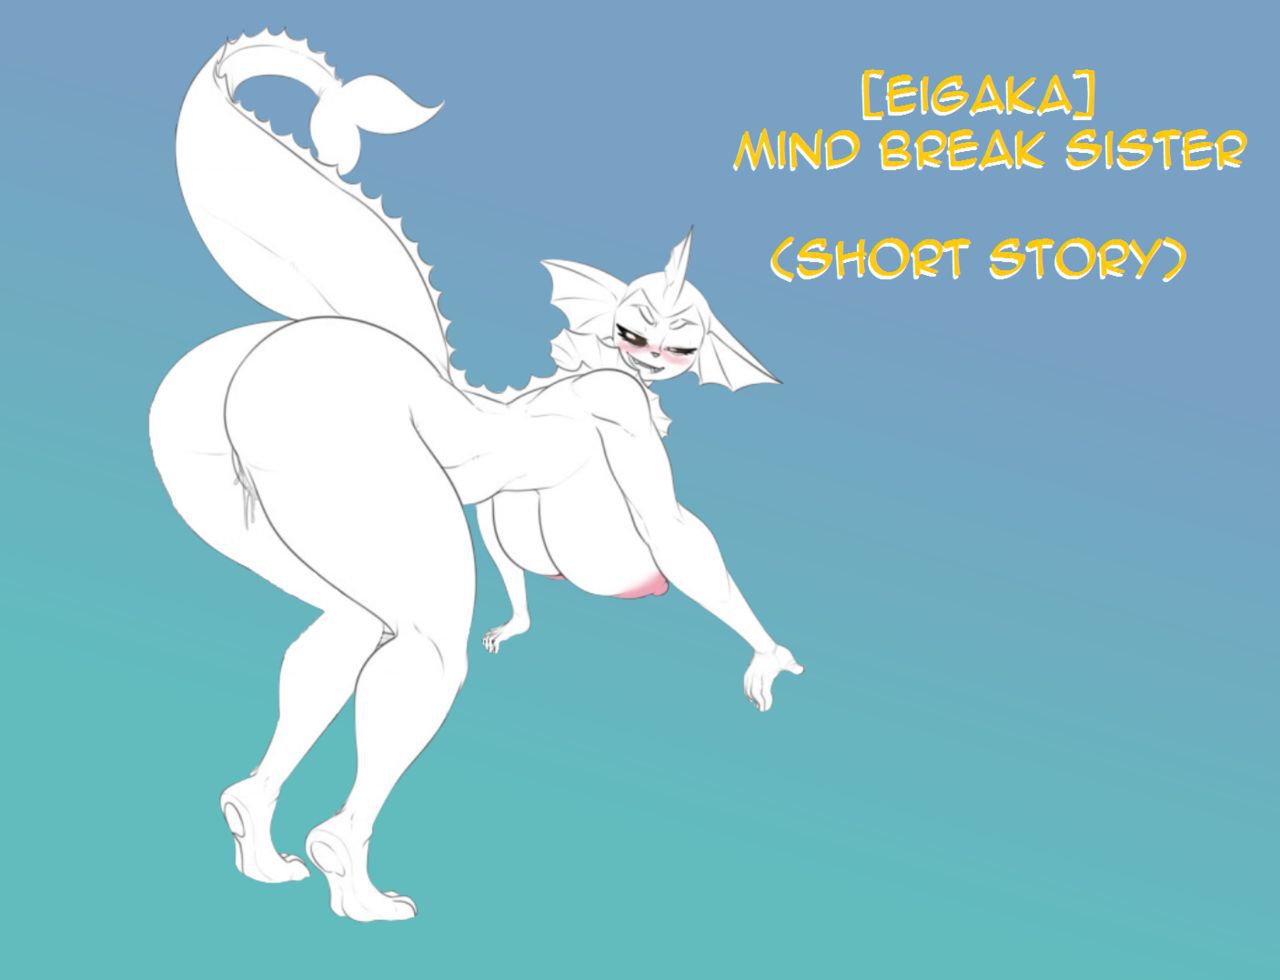 FRENCH -  [Eigaka] (Short story) Mind Break Sister (Pokemon) 1